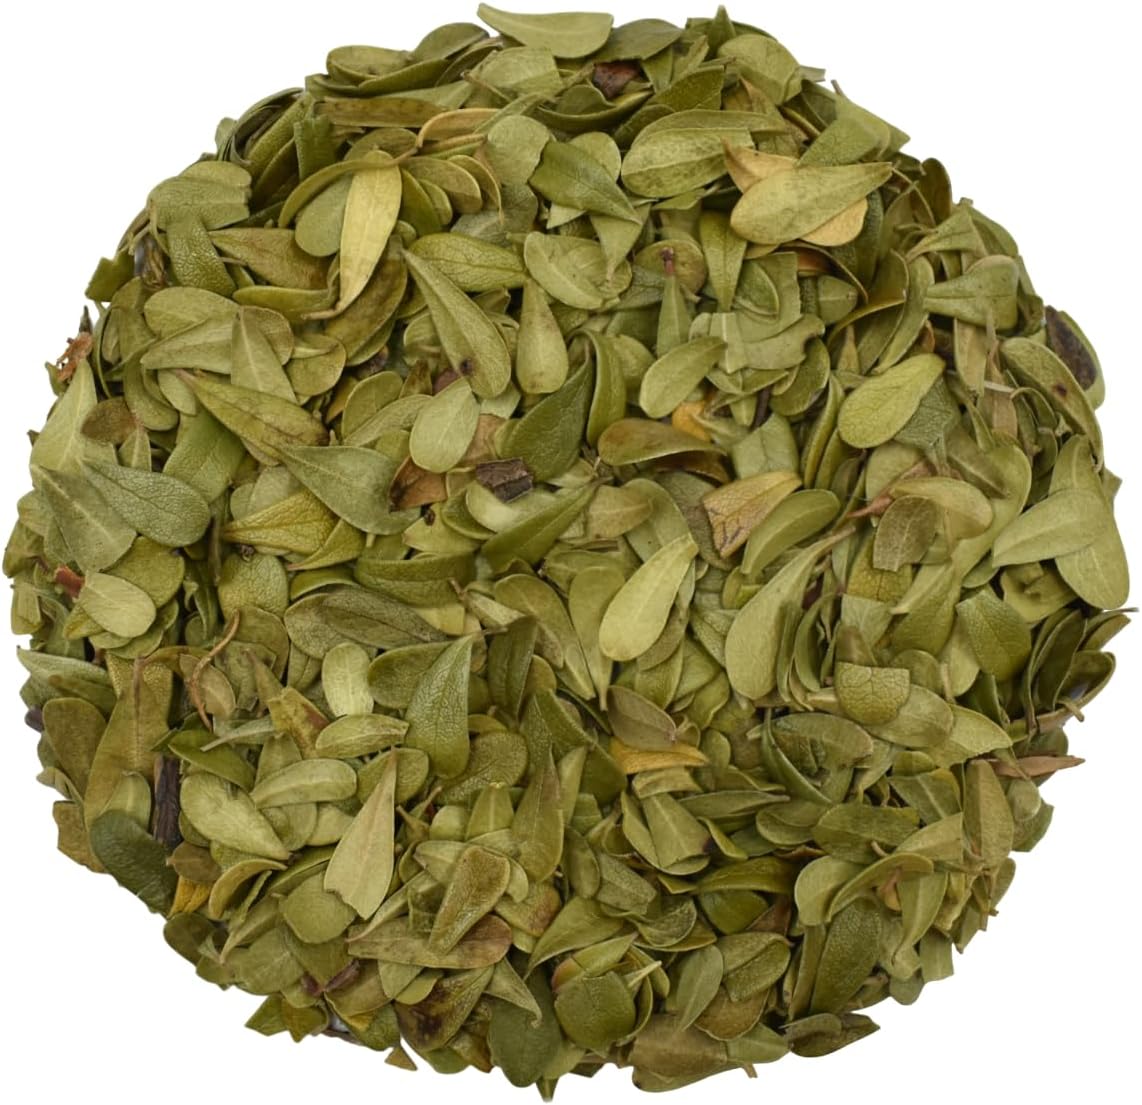 Uva Ursi Dried Leaves Tea – Brand